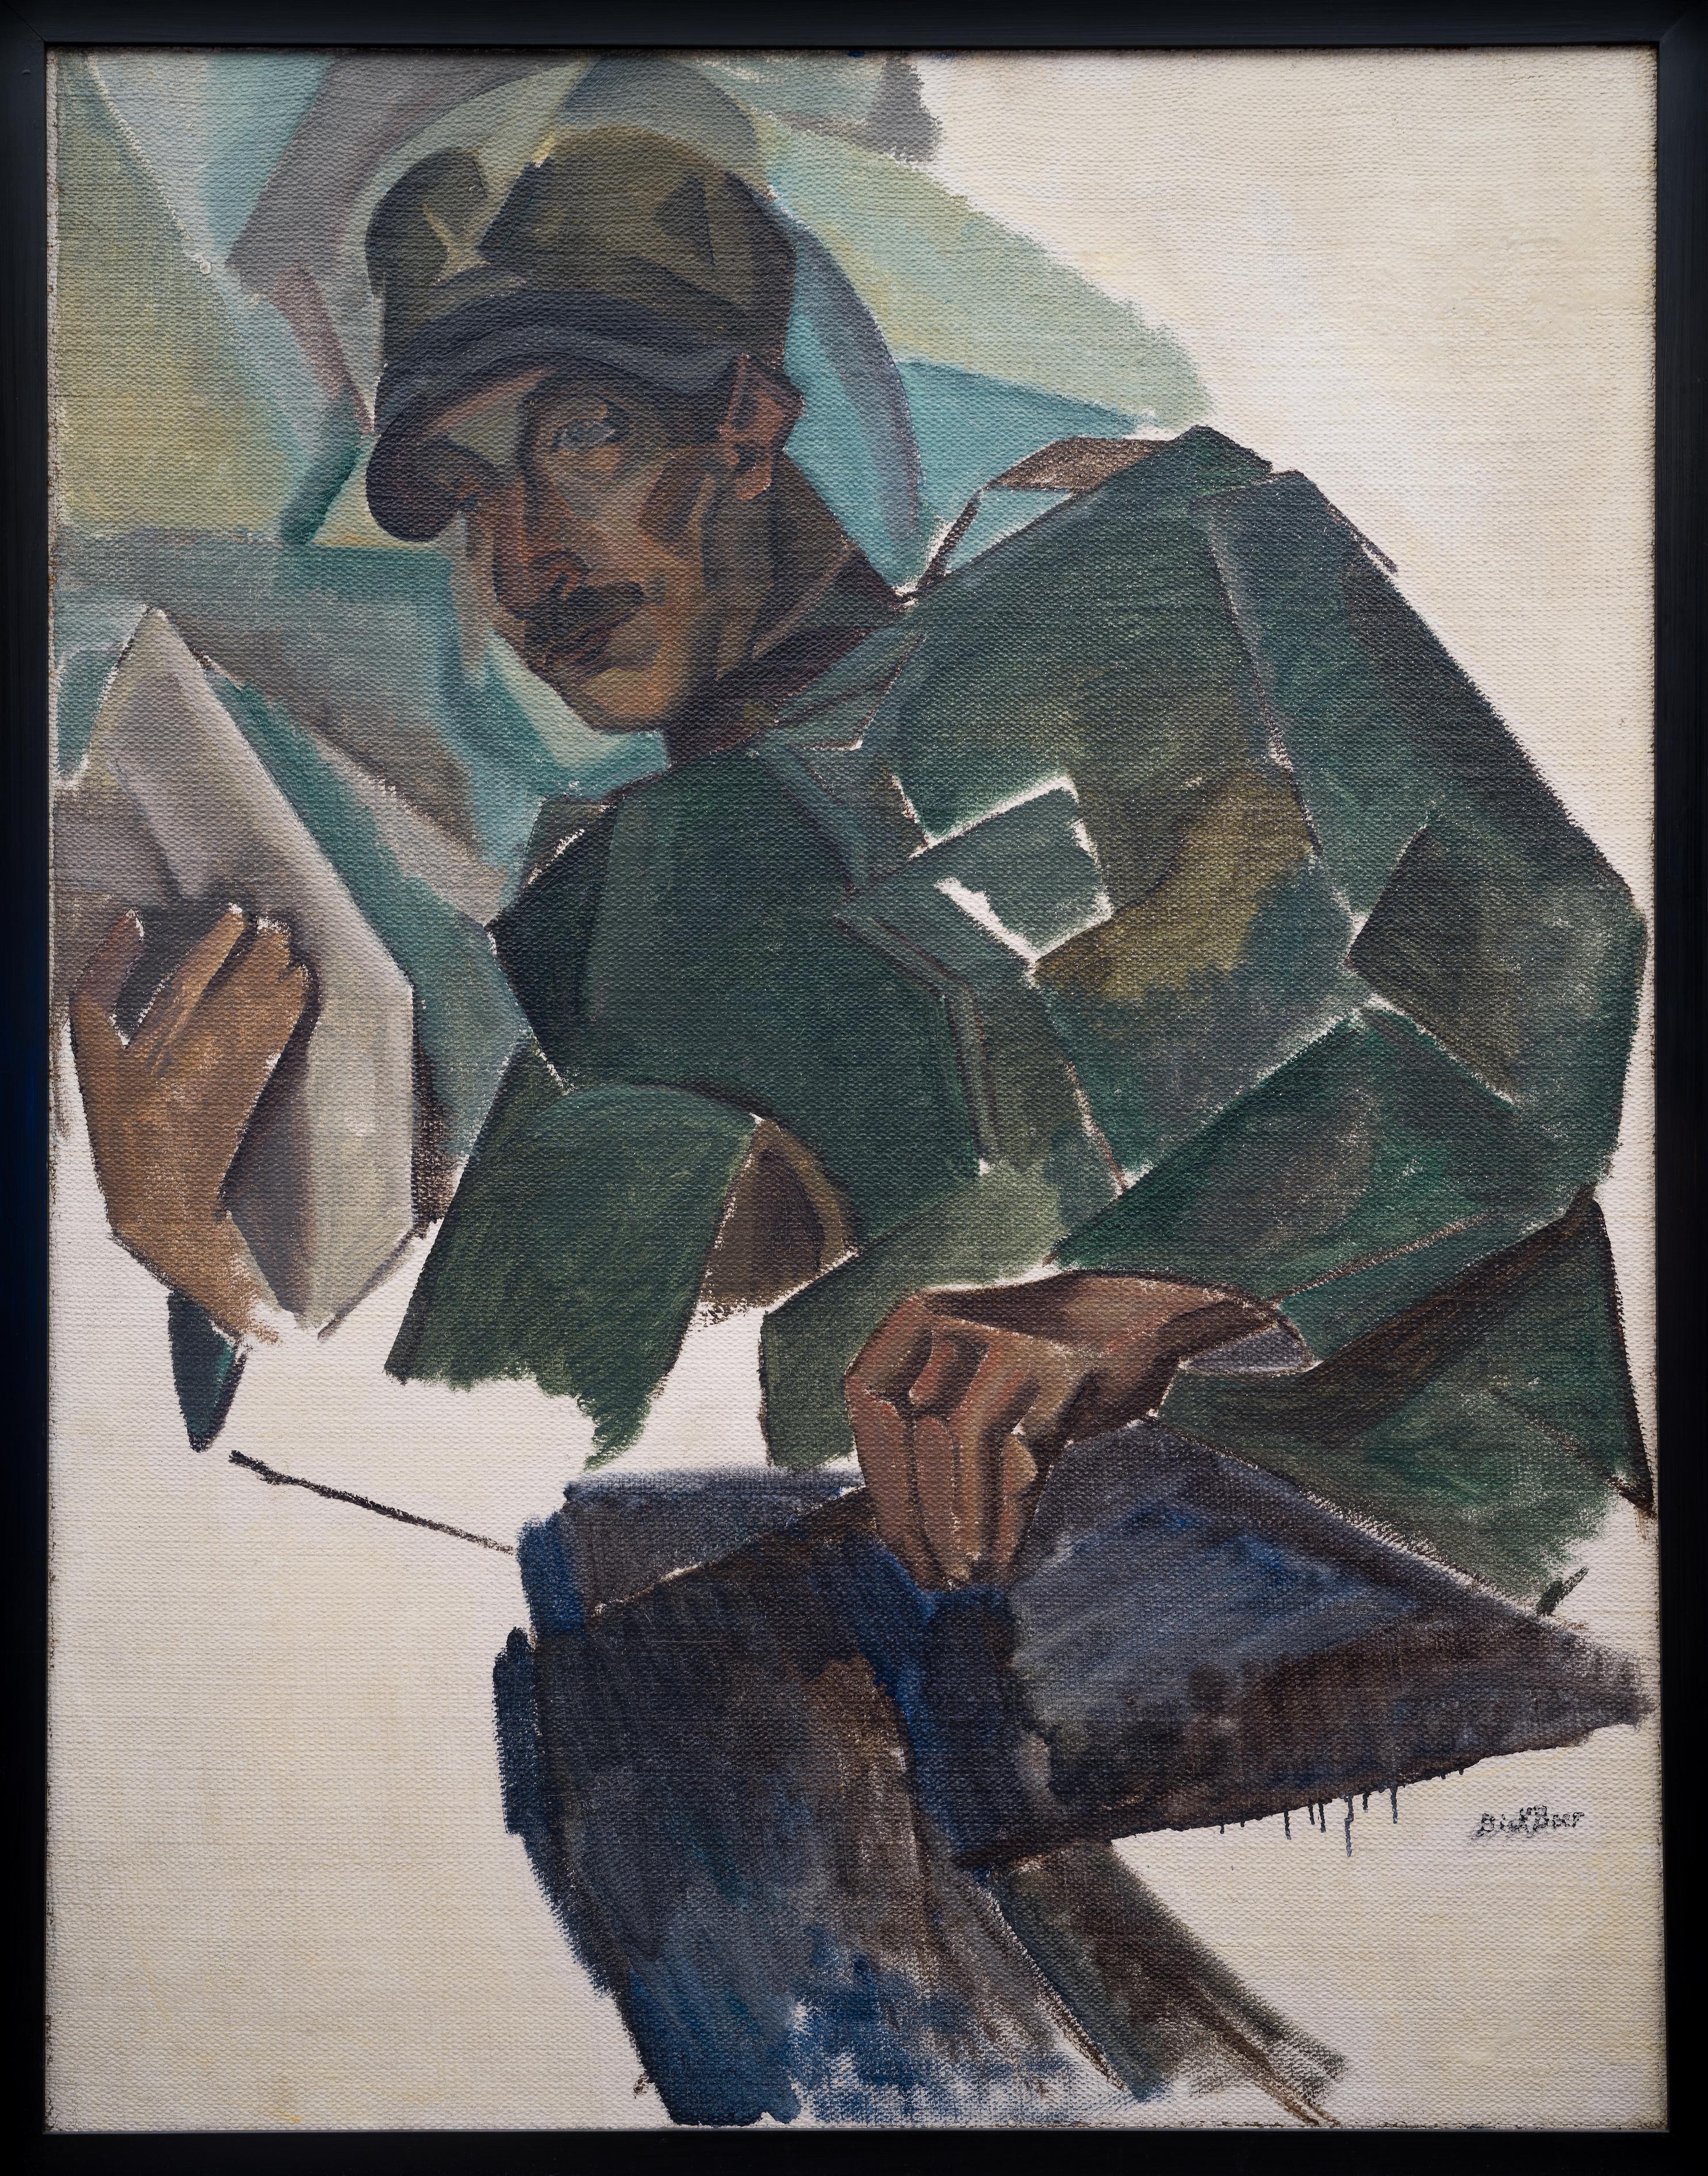 Kubistisches Porträt von Gabriele Varese (in italienischer Uniform), 1919 – Painting von Dick Beer